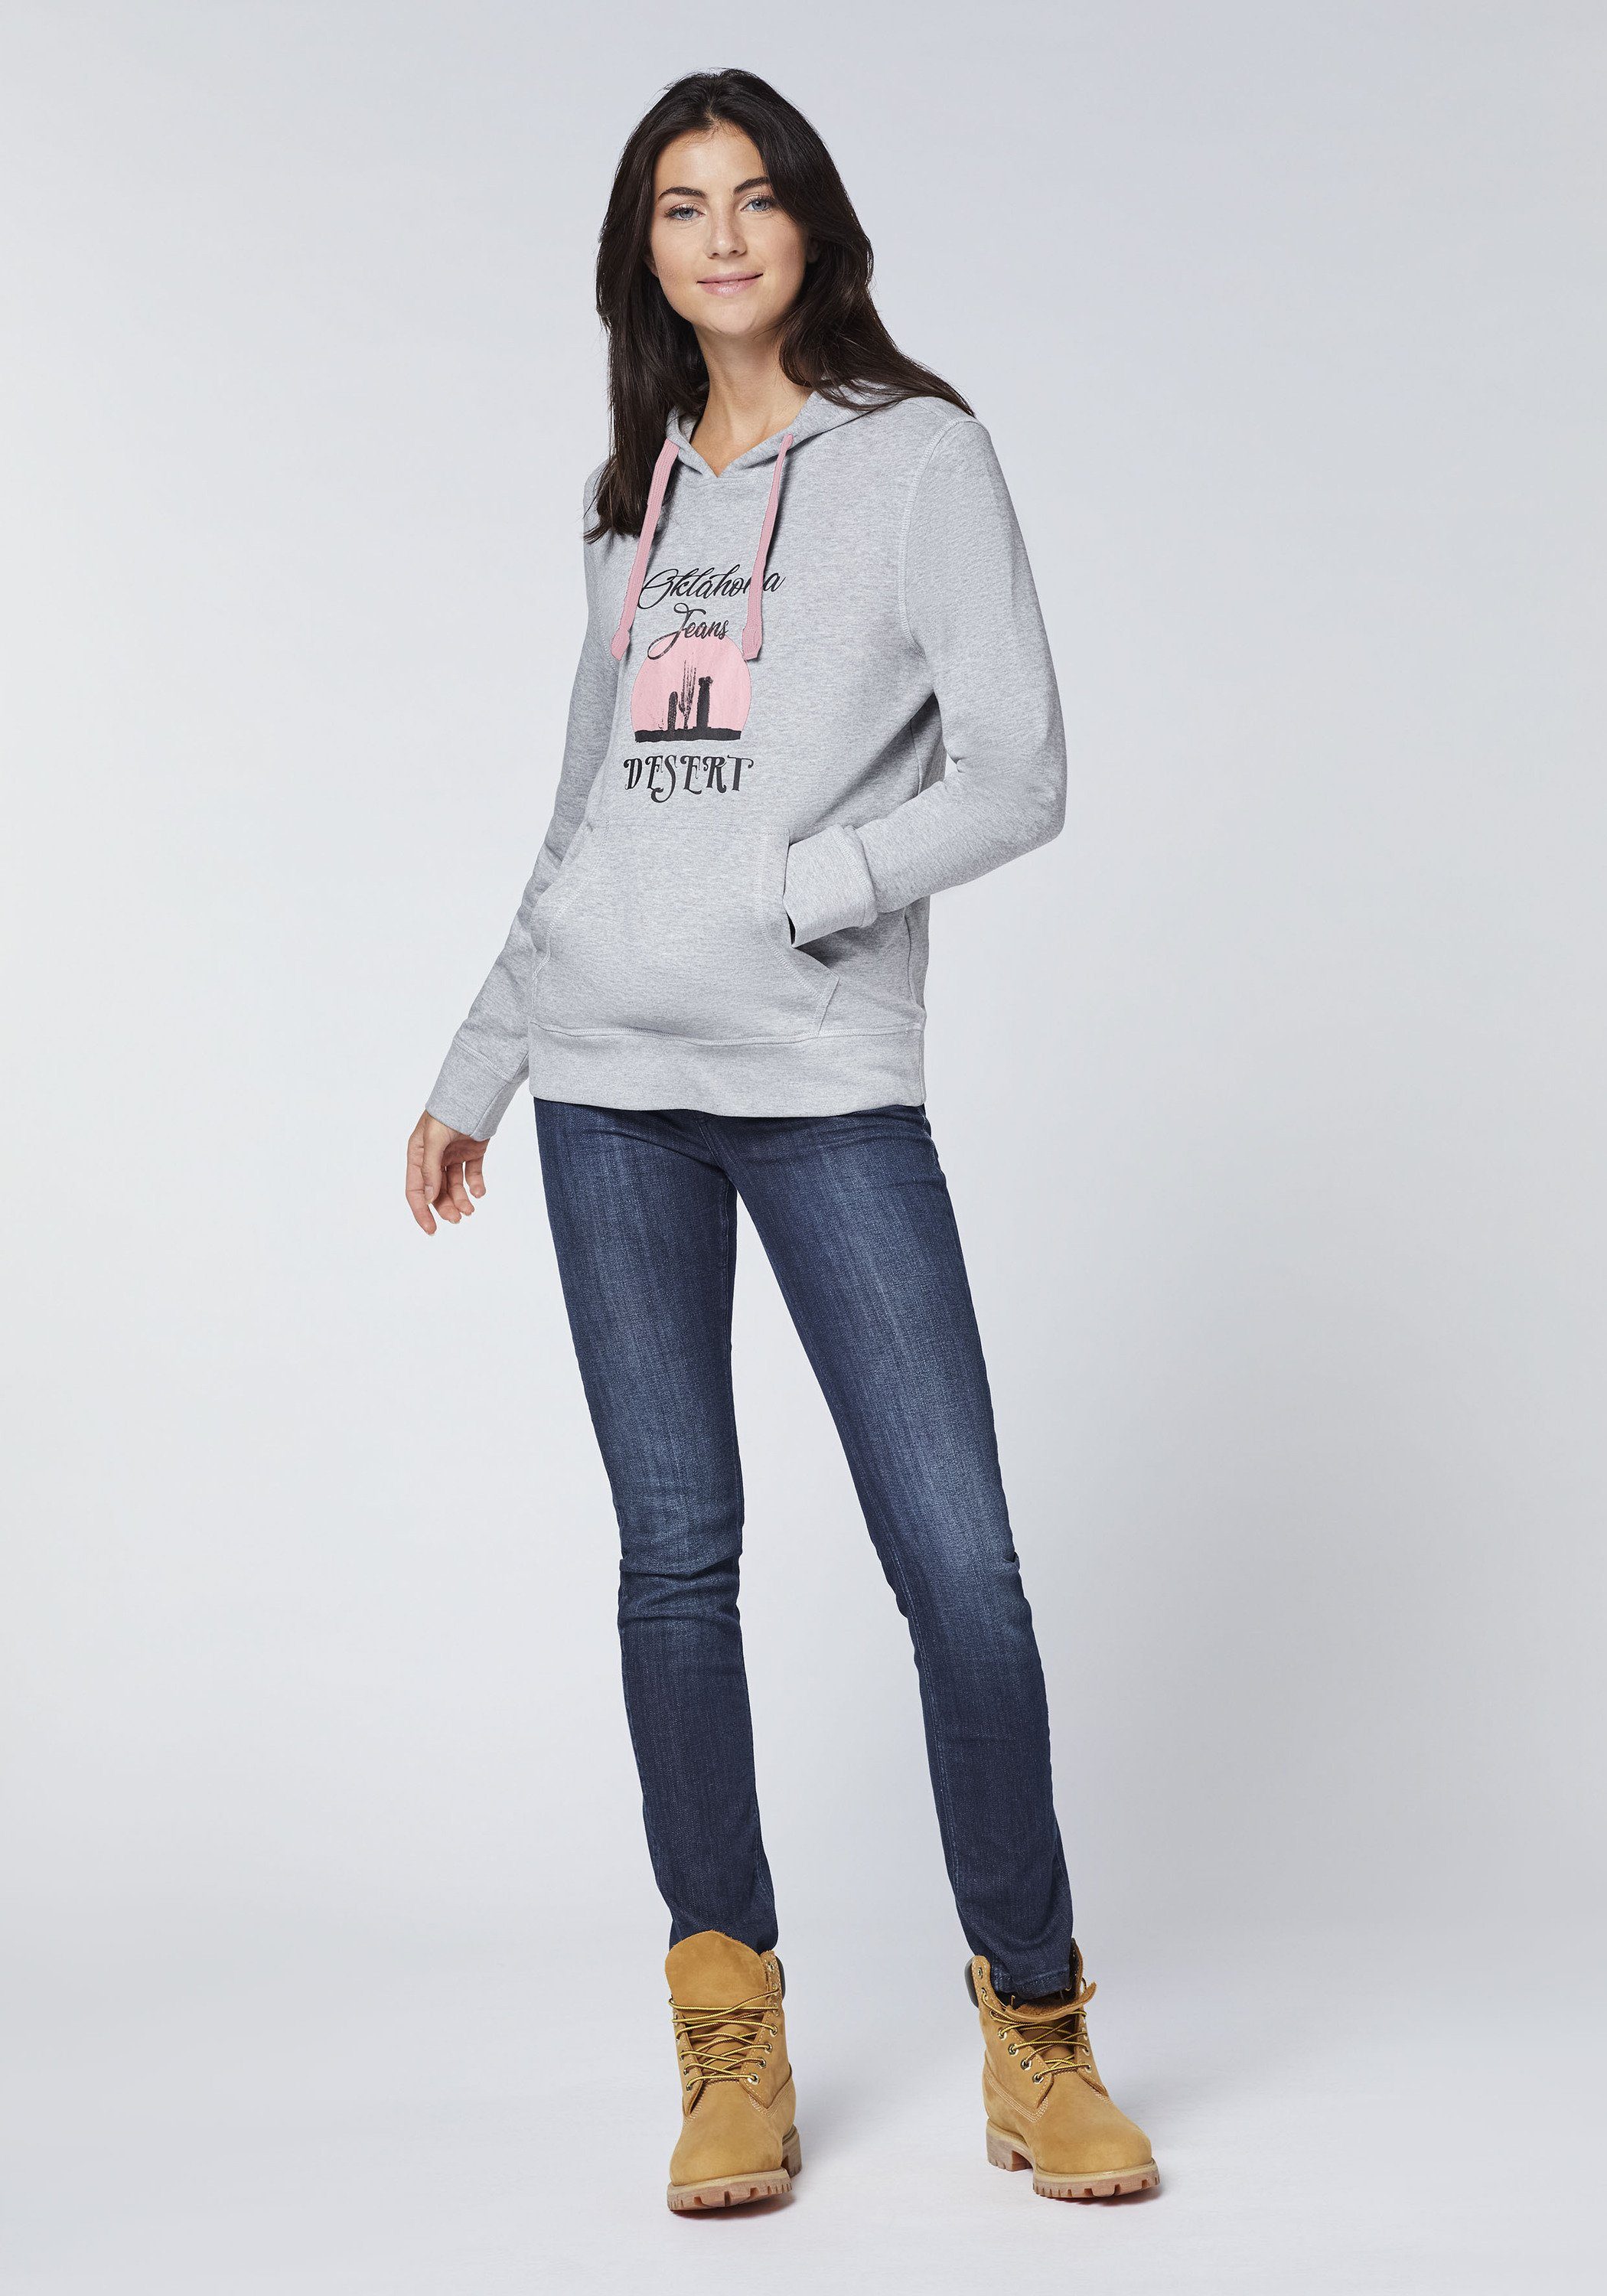 Oklahoma Neutral und -Schriftzug Melange Kapuzensweatshirt Desert-Motiv Gray 17-4402M mit Jeans